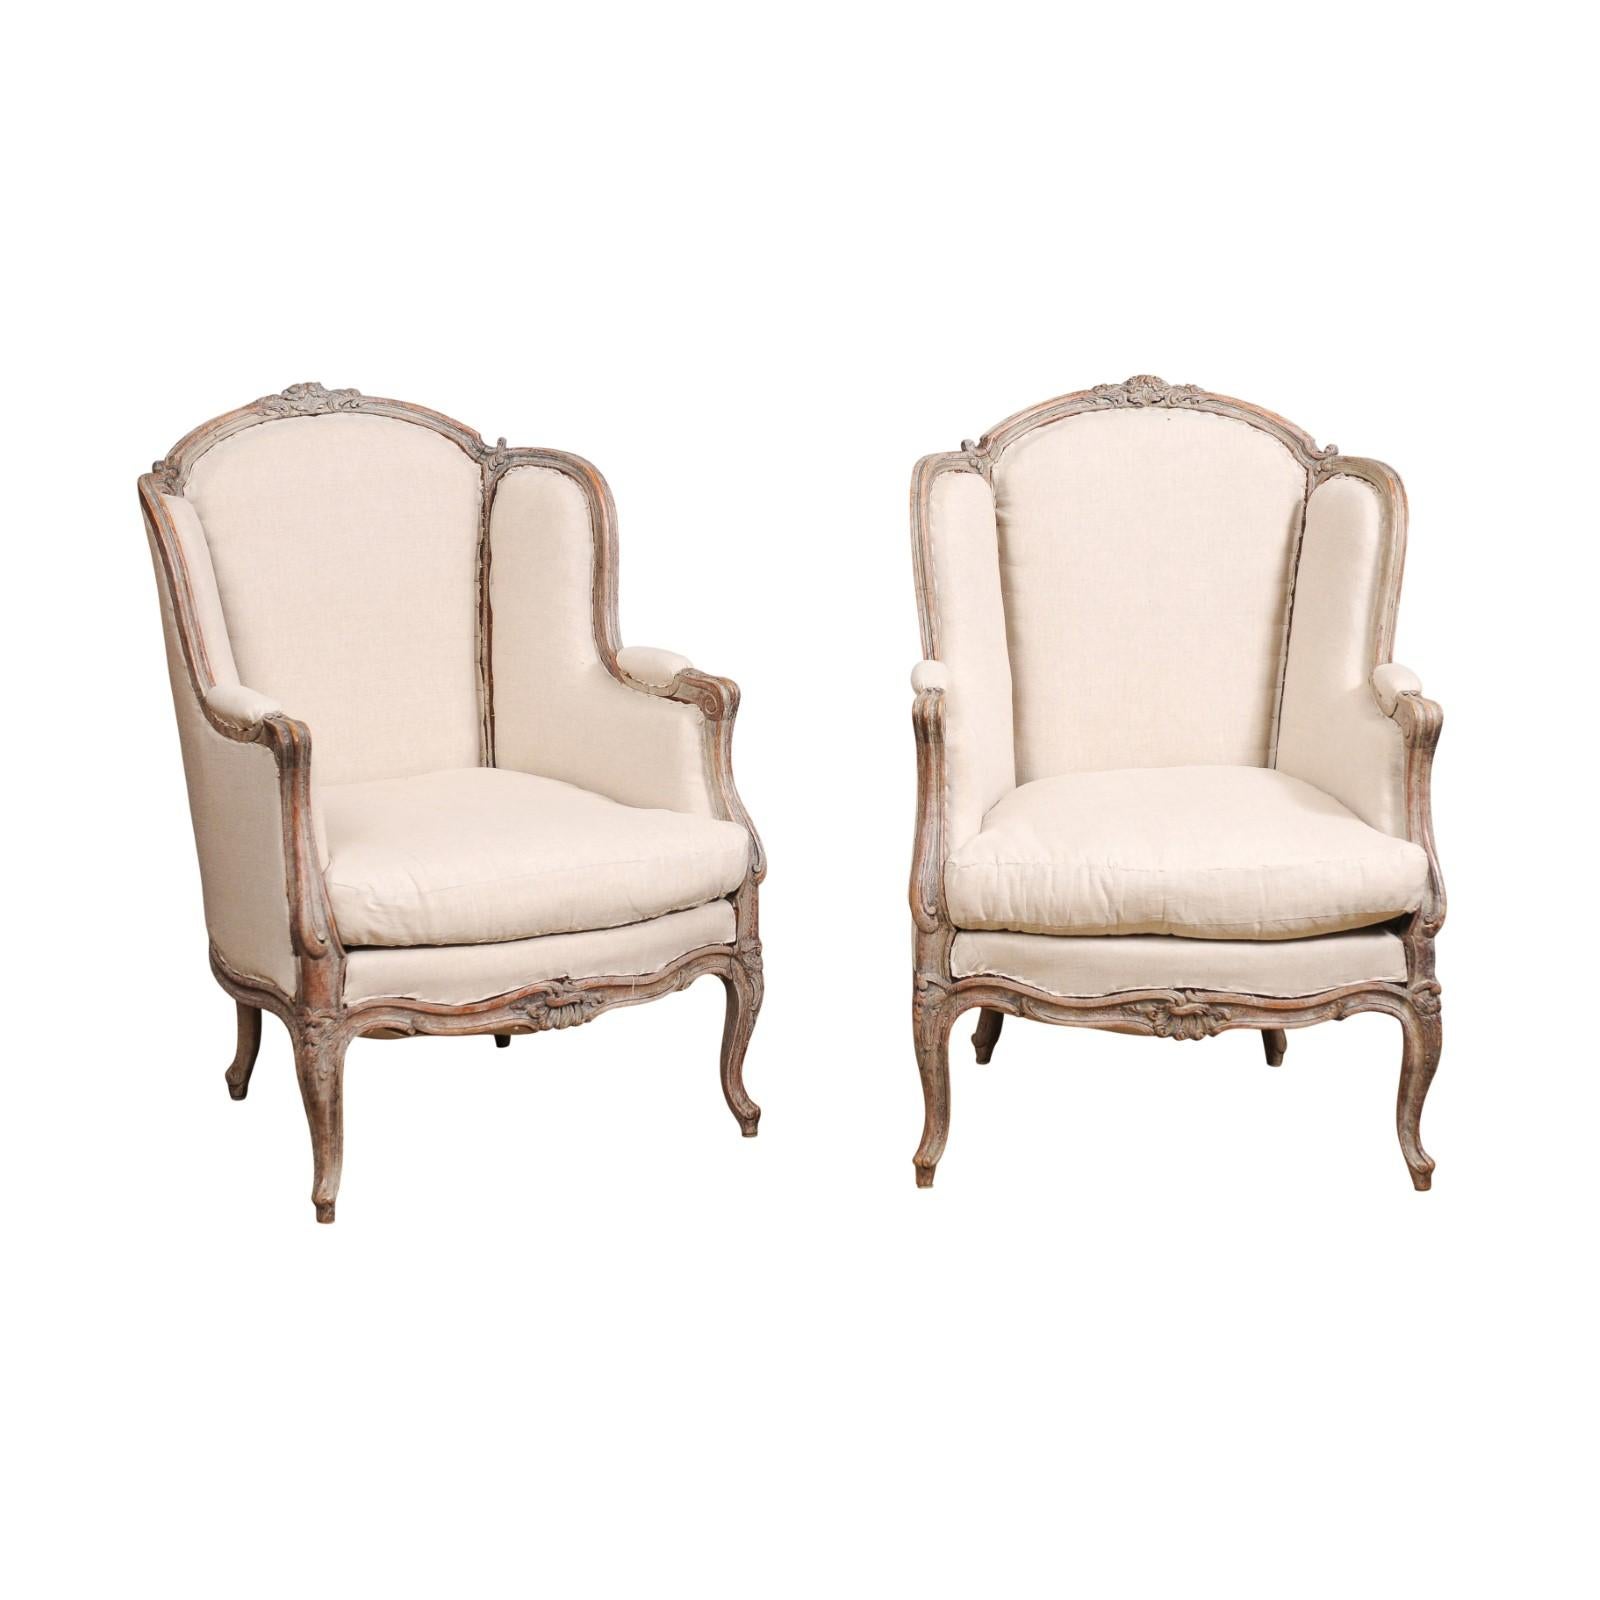 Ein Paar französischer Stühle im Stil Louis XV aus bemaltem Holz, um 1880, mit geschnitzten Blumenmotiven, Cabriole-Beinen und gebrauchter Polsterung. Dieses exquisite Paar französischer Bergère à oreilles im Stil Louis XV aus der Zeit um 1880